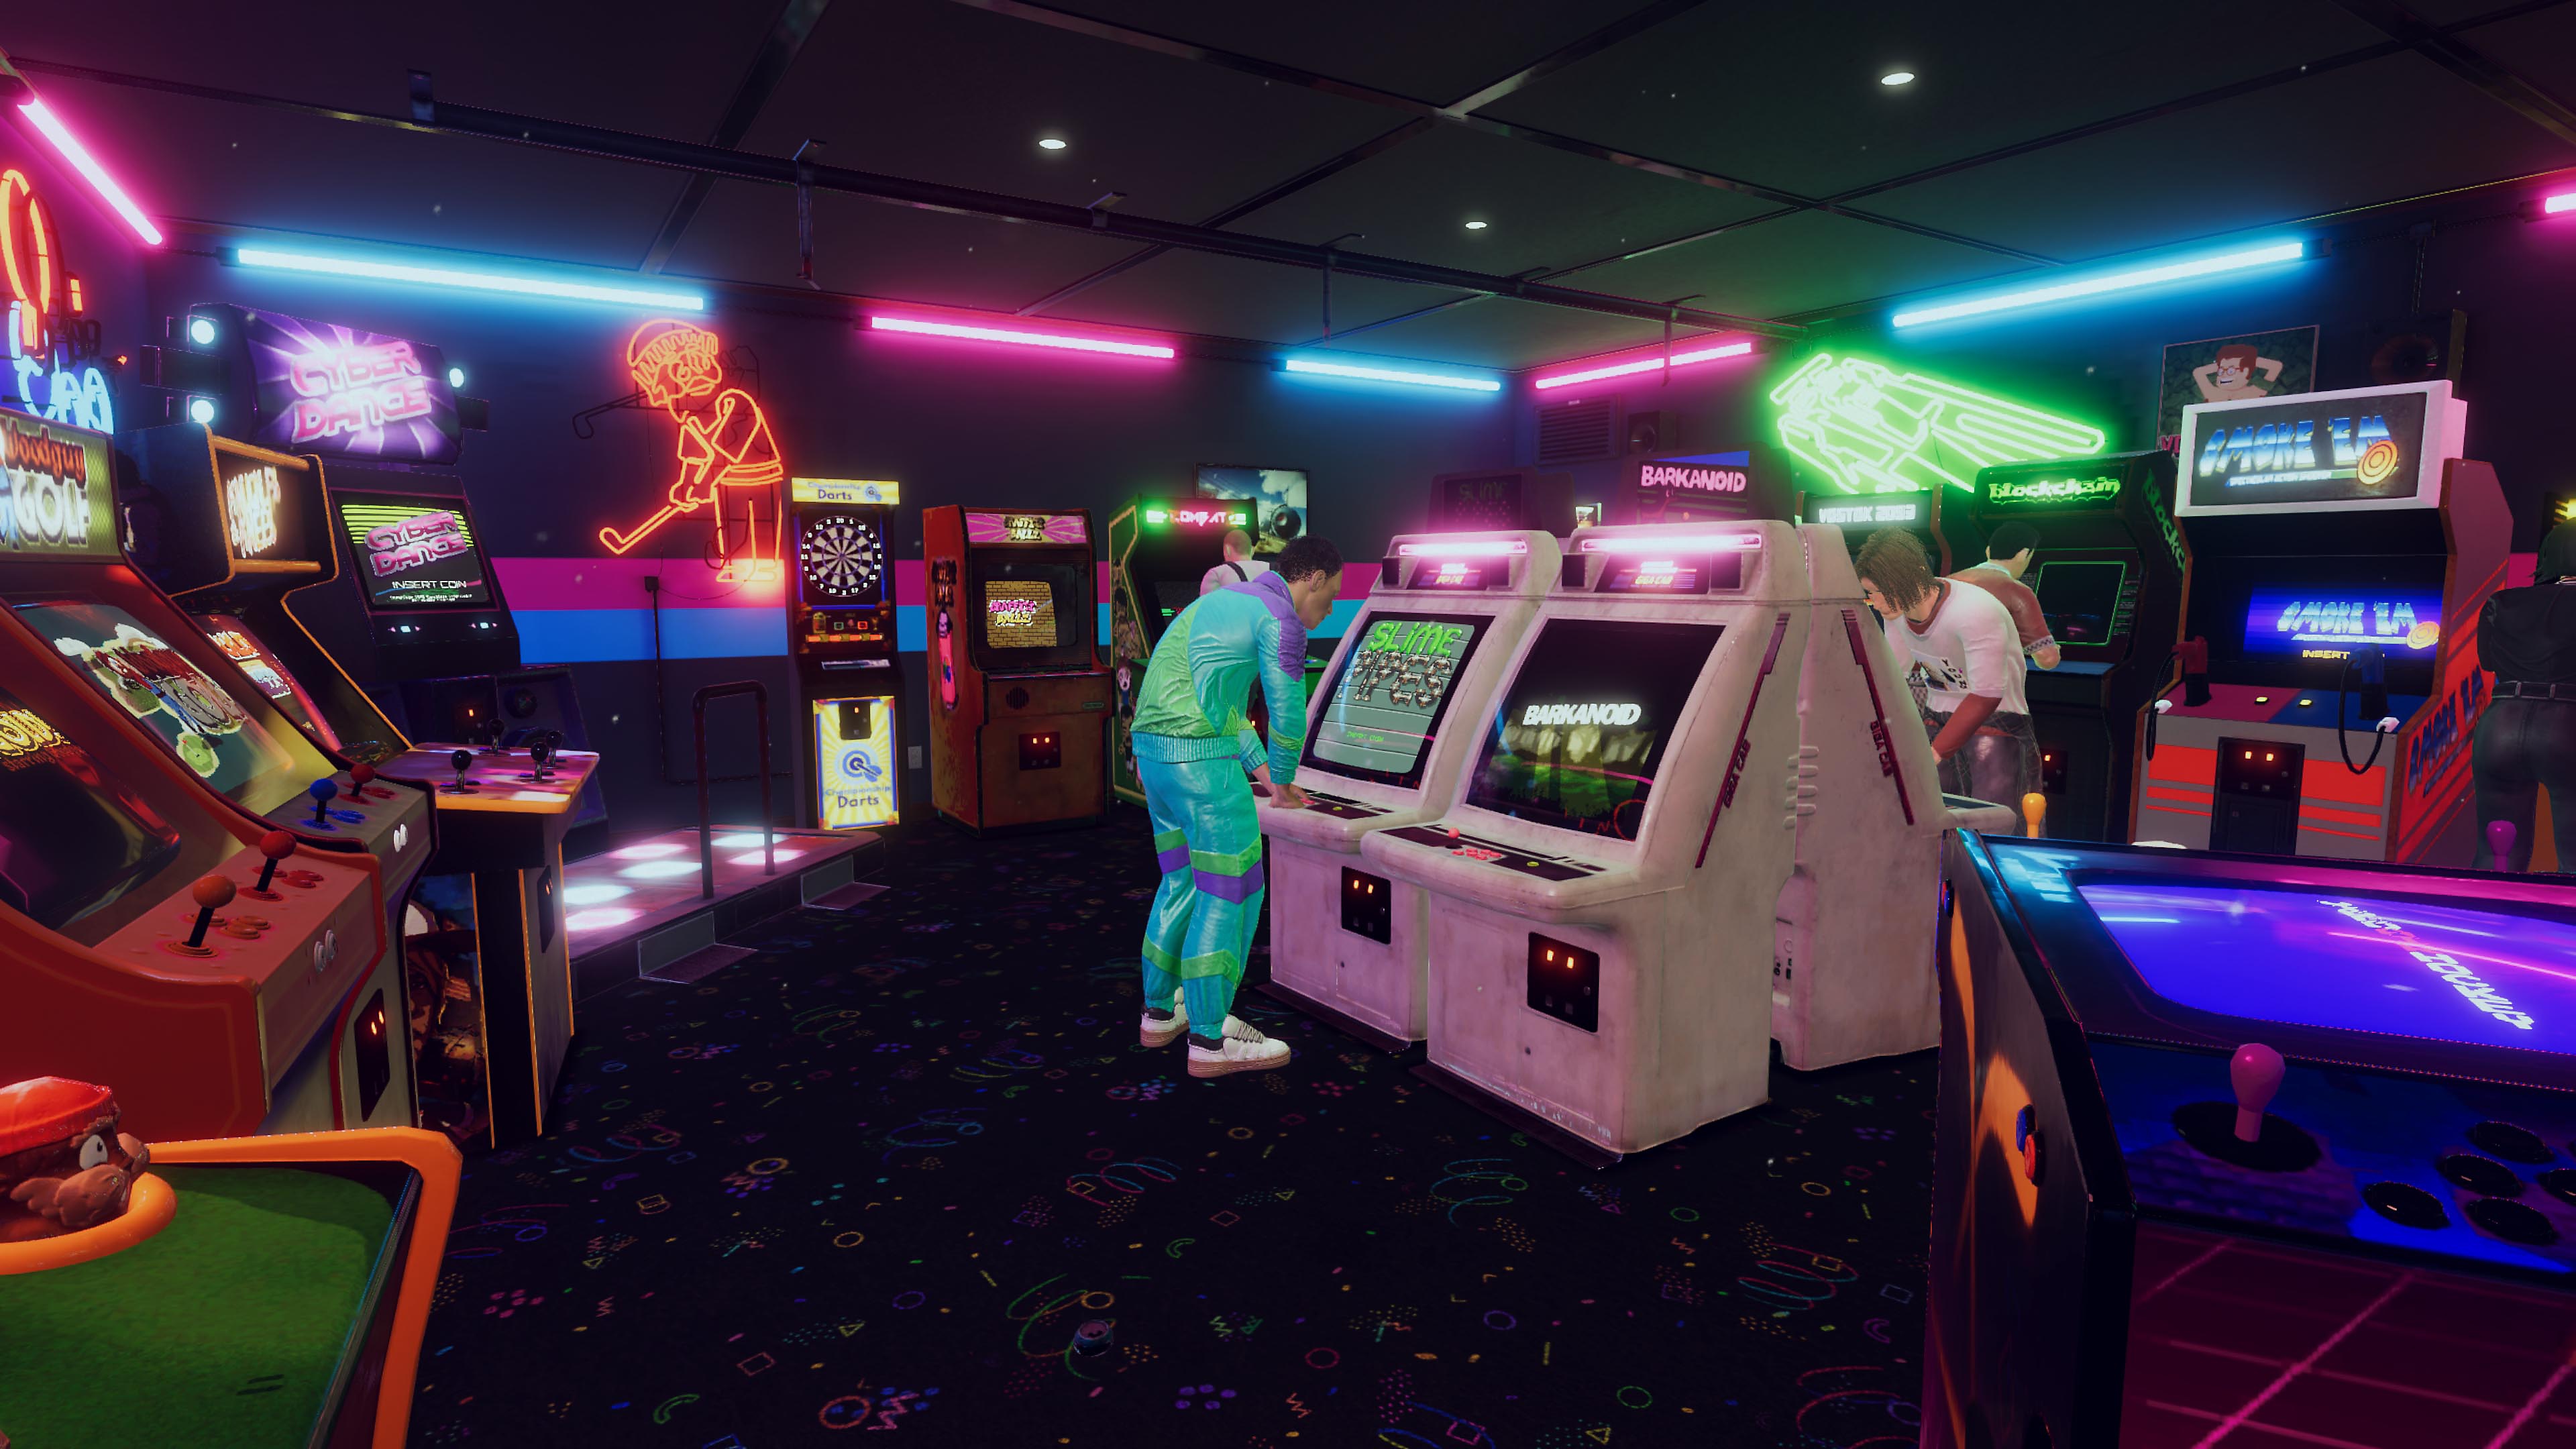 《Arcade Paradise》螢幕截圖，顯示有著藍色和粉紅色霓虹燈的90年代風格復古街機